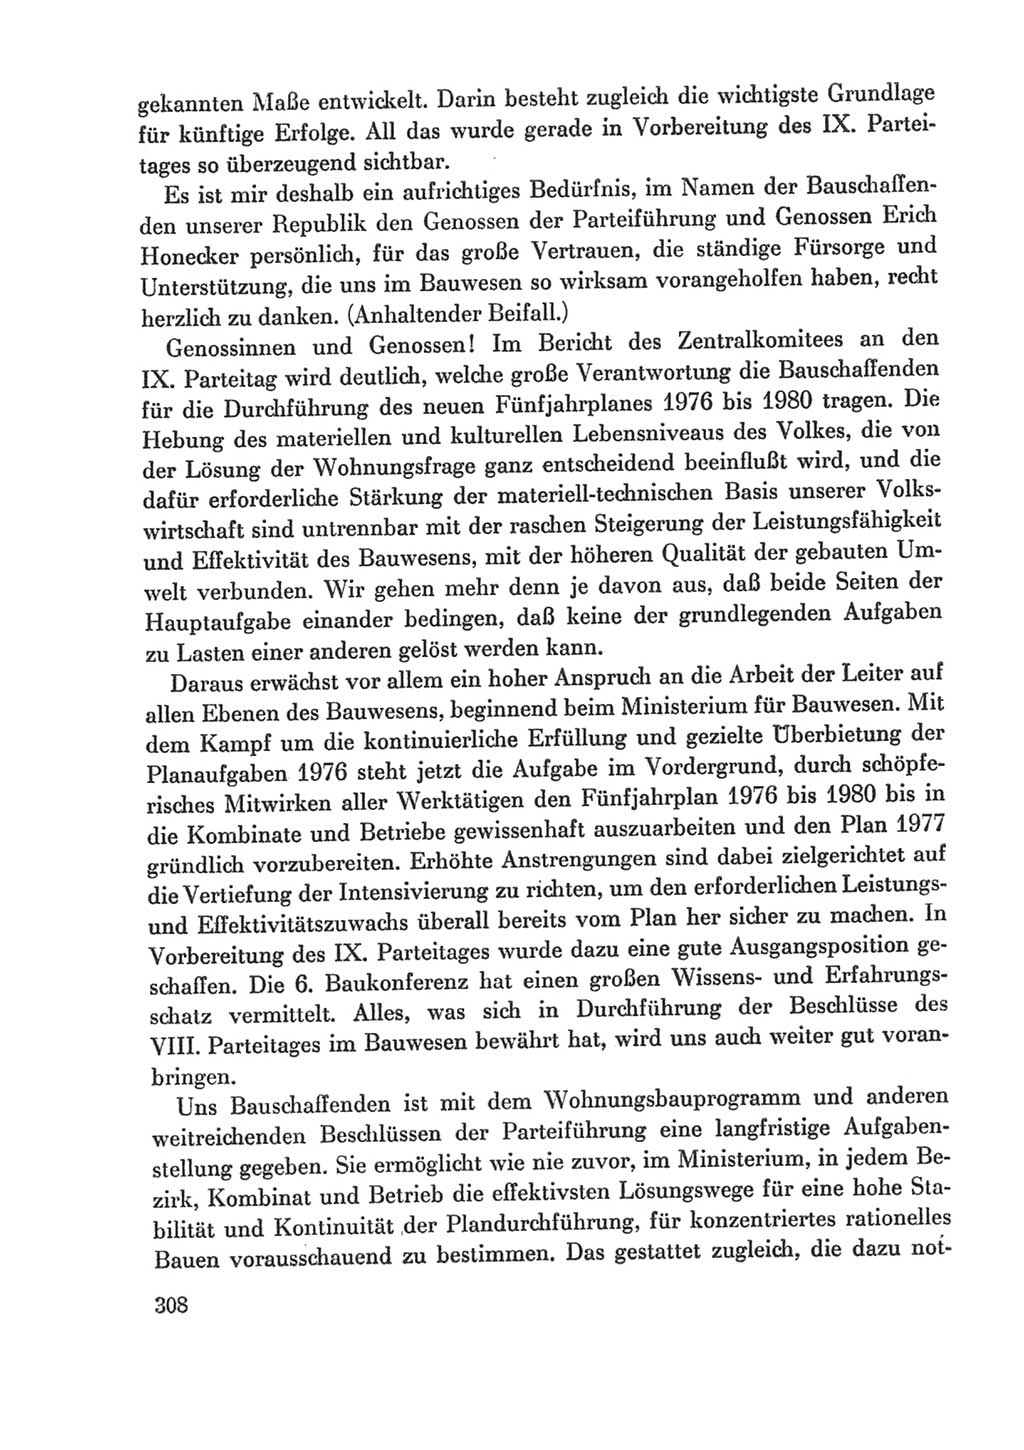 Protokoll der Verhandlungen des Ⅸ. Parteitages der Sozialistischen Einheitspartei Deutschlands (SED) [Deutsche Demokratische Republik (DDR)] 1976, Band 1, Seite 308 (Prot. Verh. Ⅸ. PT SED DDR 1976, Bd. 1, S. 308)